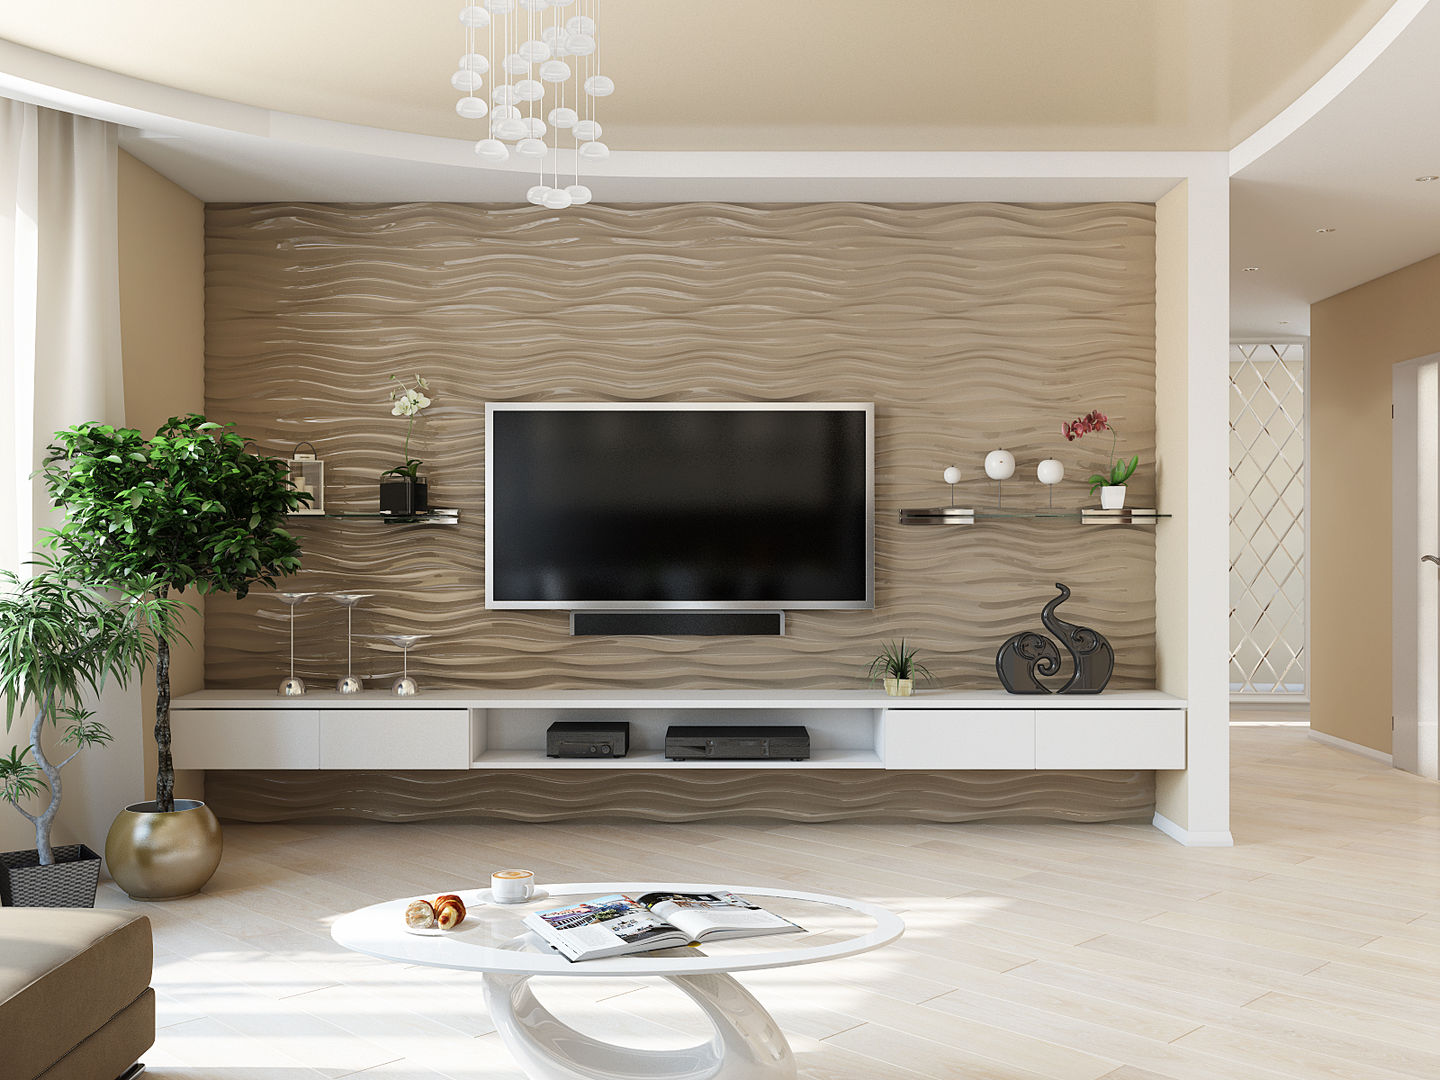 Минималистичный интерьер с яркой детской, Tatiana Zaitseva Design Studio Tatiana Zaitseva Design Studio Minimalist living room